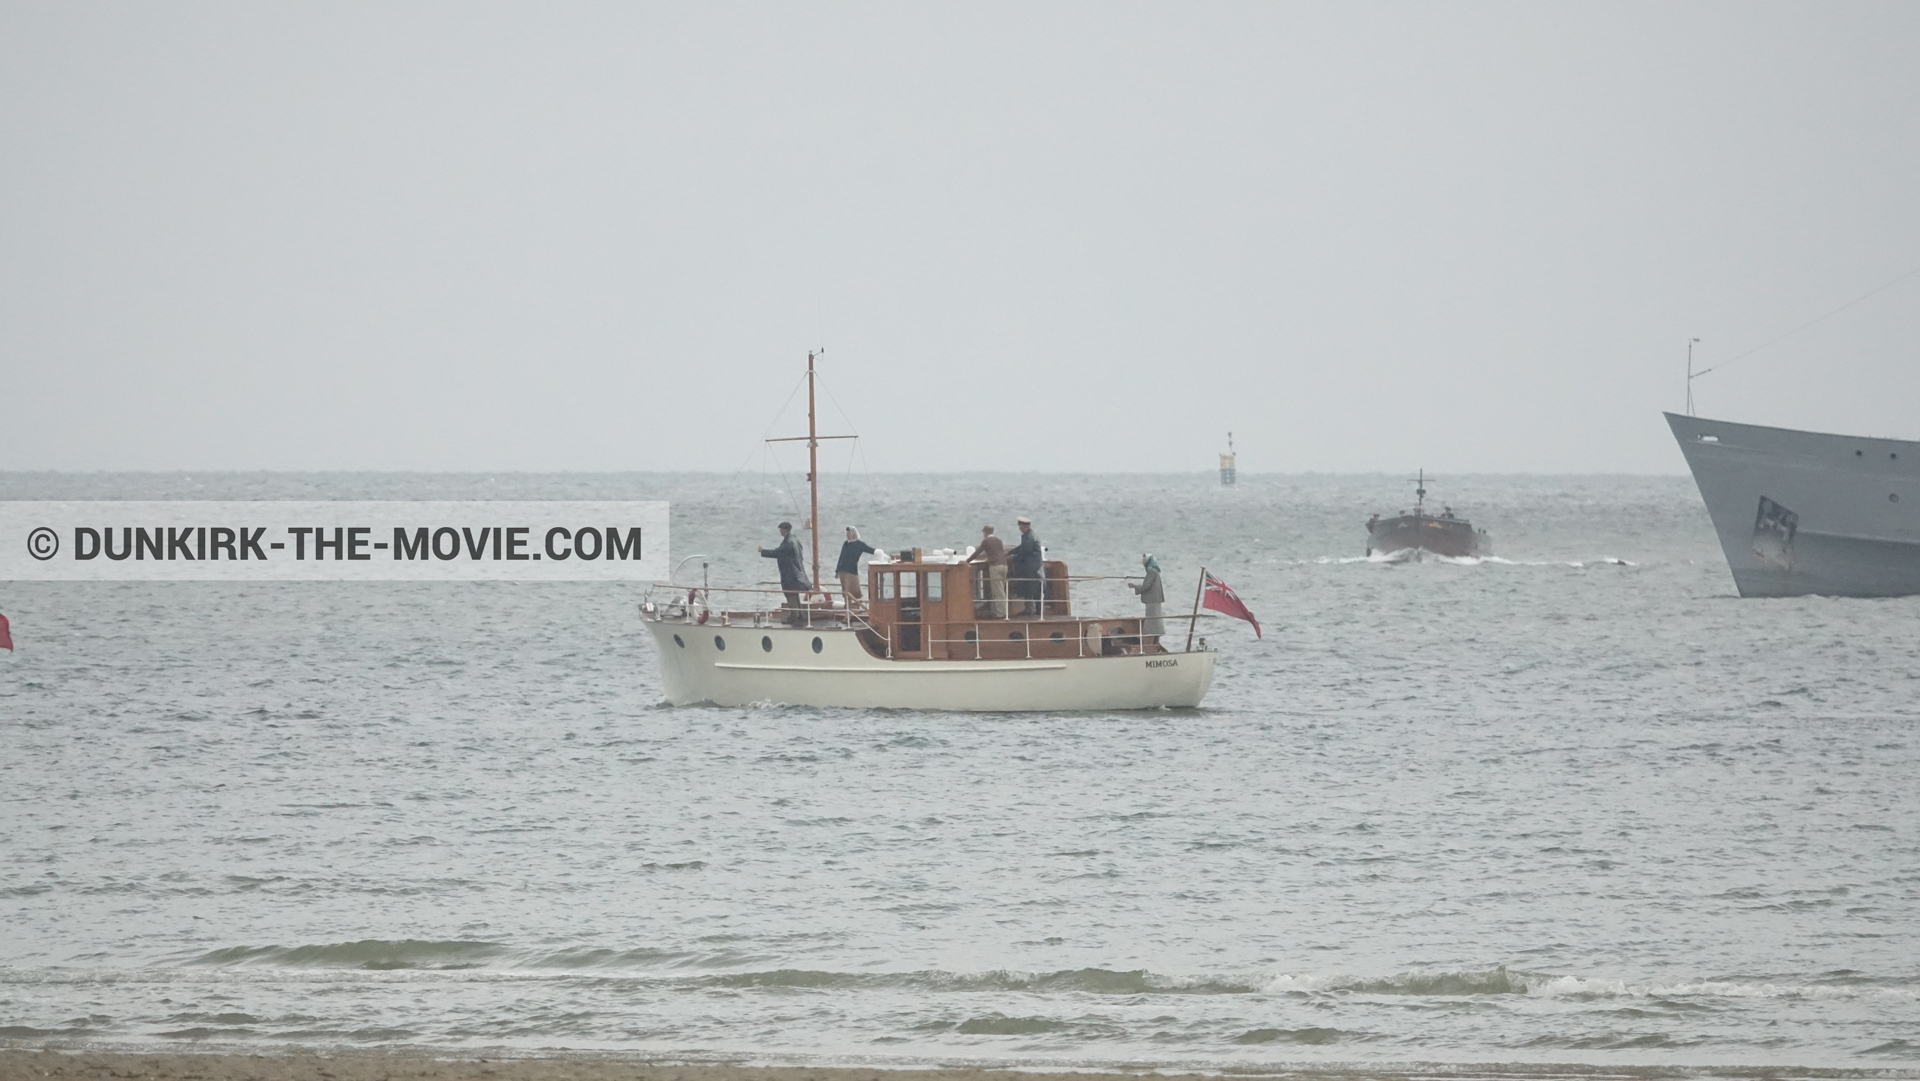 Fotos con barco, H11 - MLV Castor, playa,  durante el rodaje de la película Dunkerque de Nolan